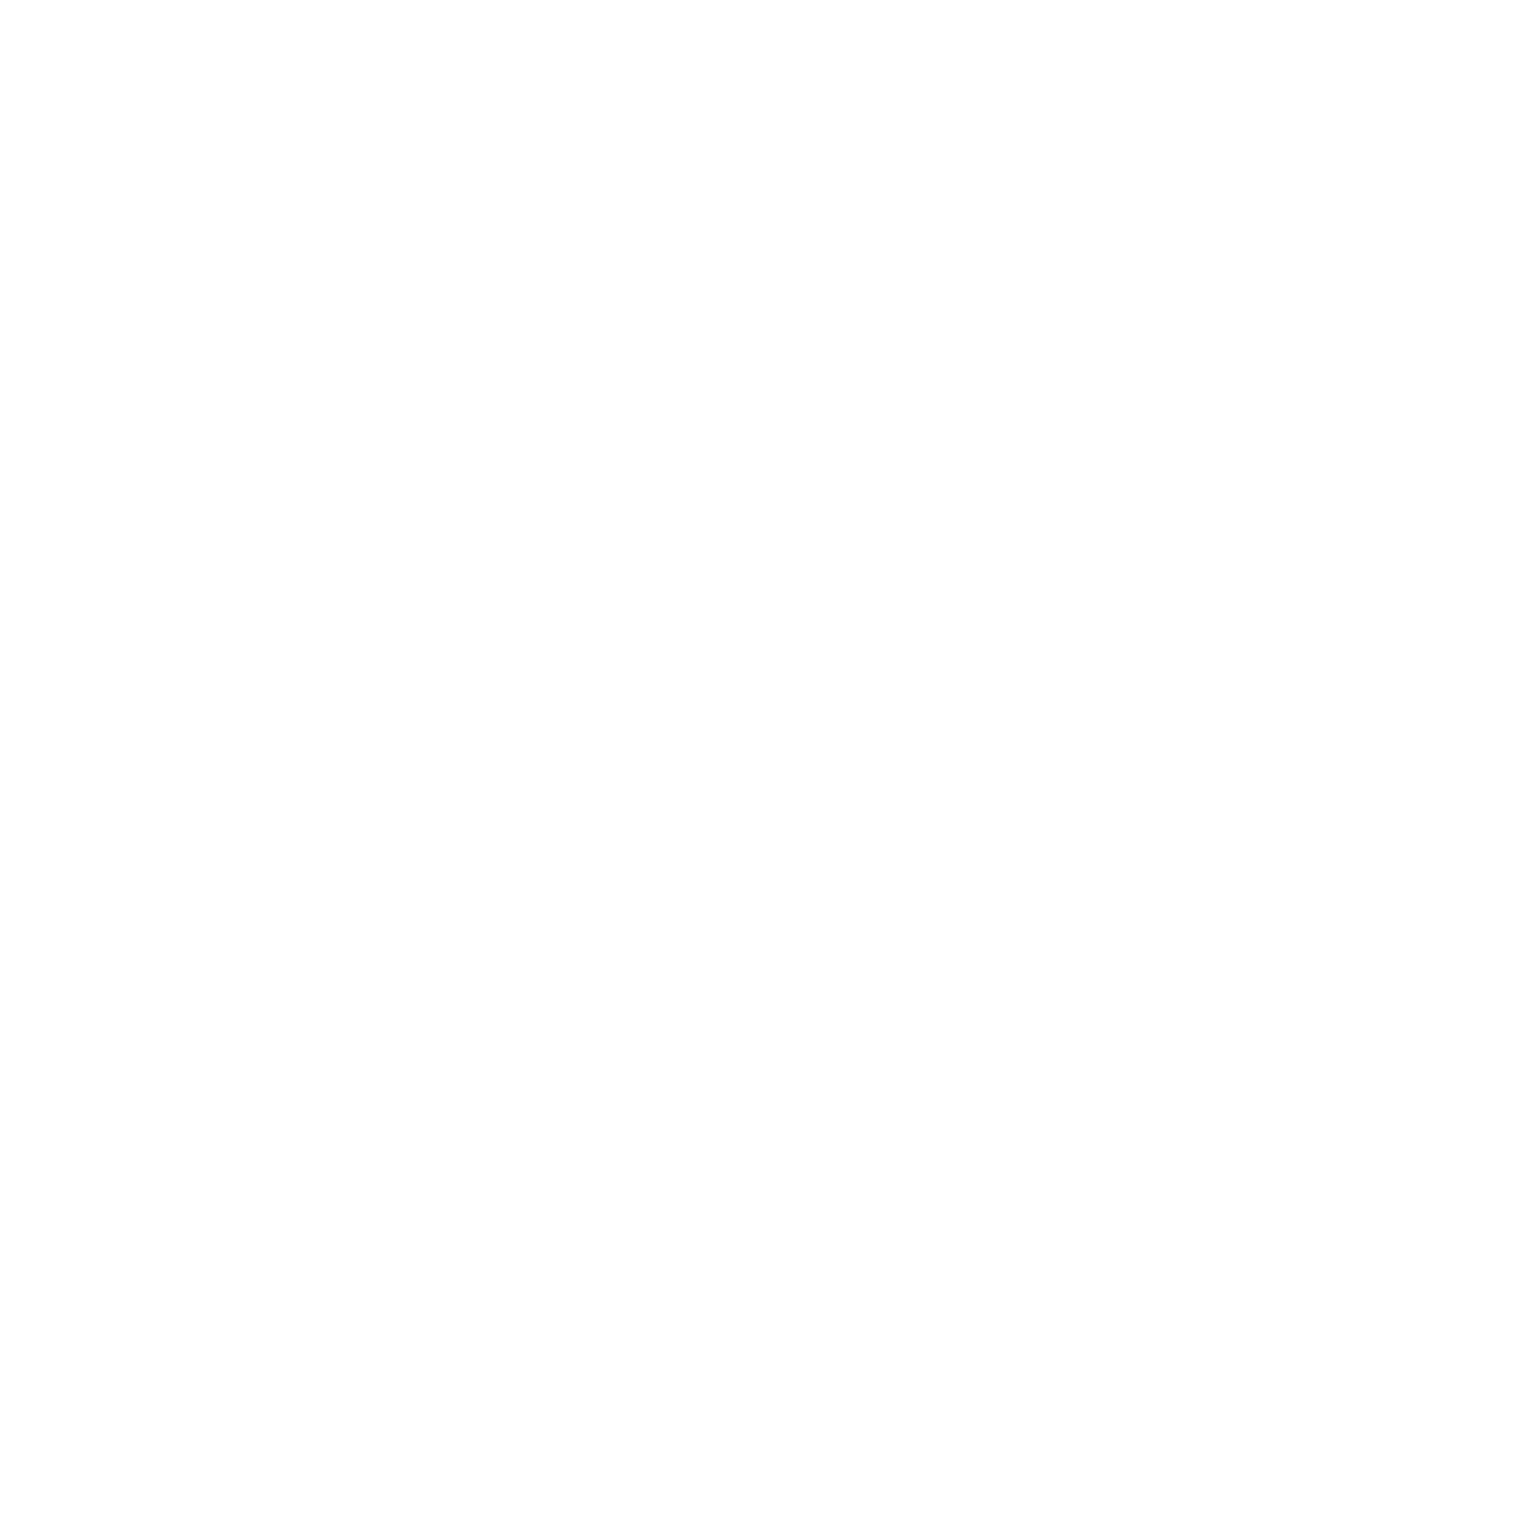 Iluka Resources logo pour fonds sombres (PNG transparent)